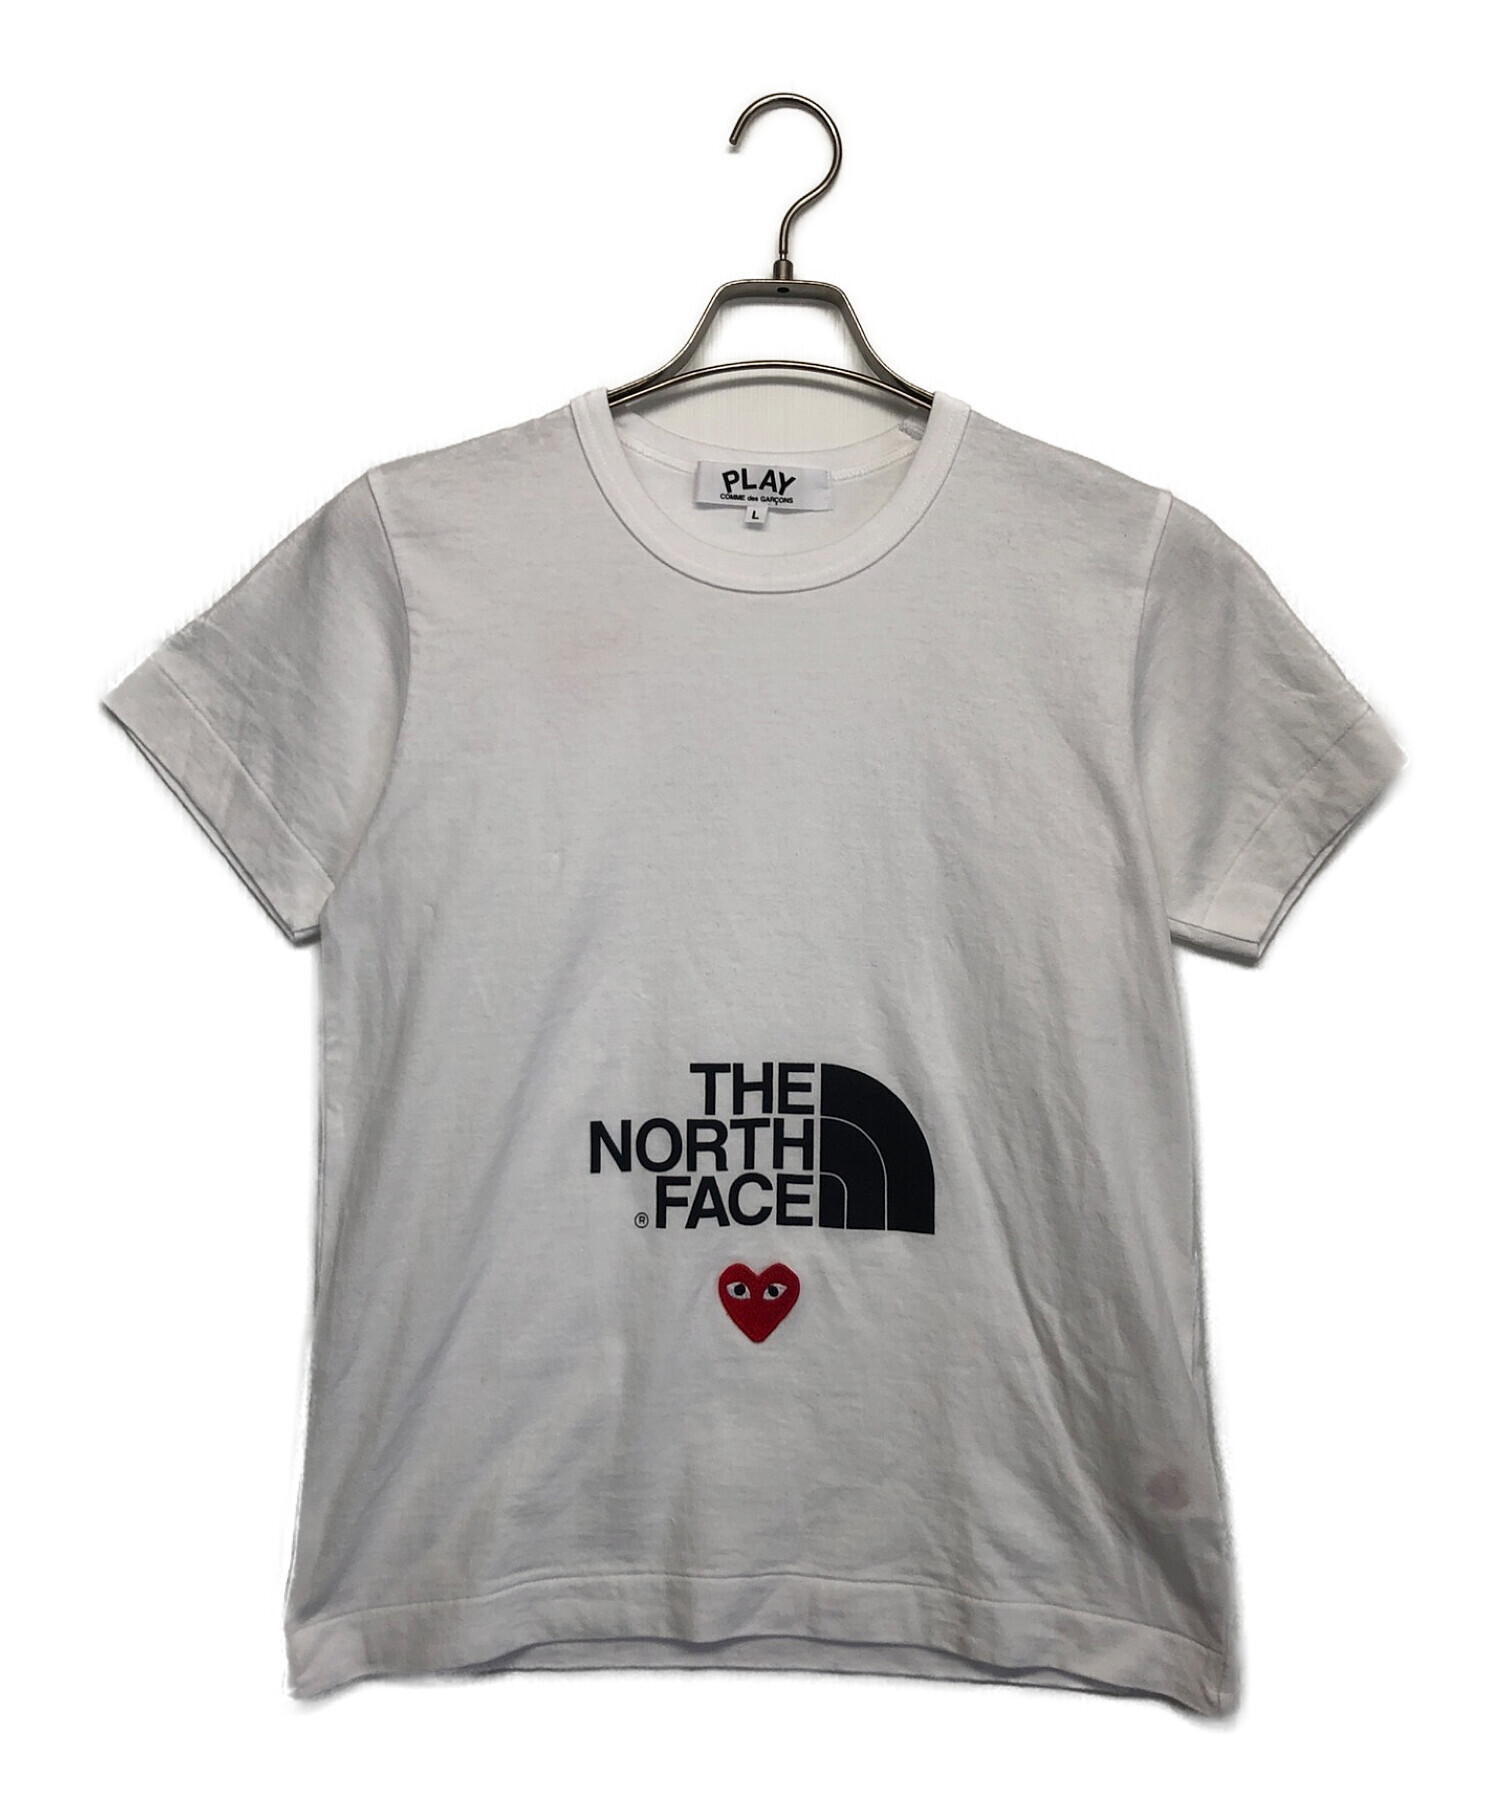 COMME des GARCONS (コムデギャルソン) THE NORTH FACE (ザ ノース フェイス) Tシャツ ホワイト サイズ:L